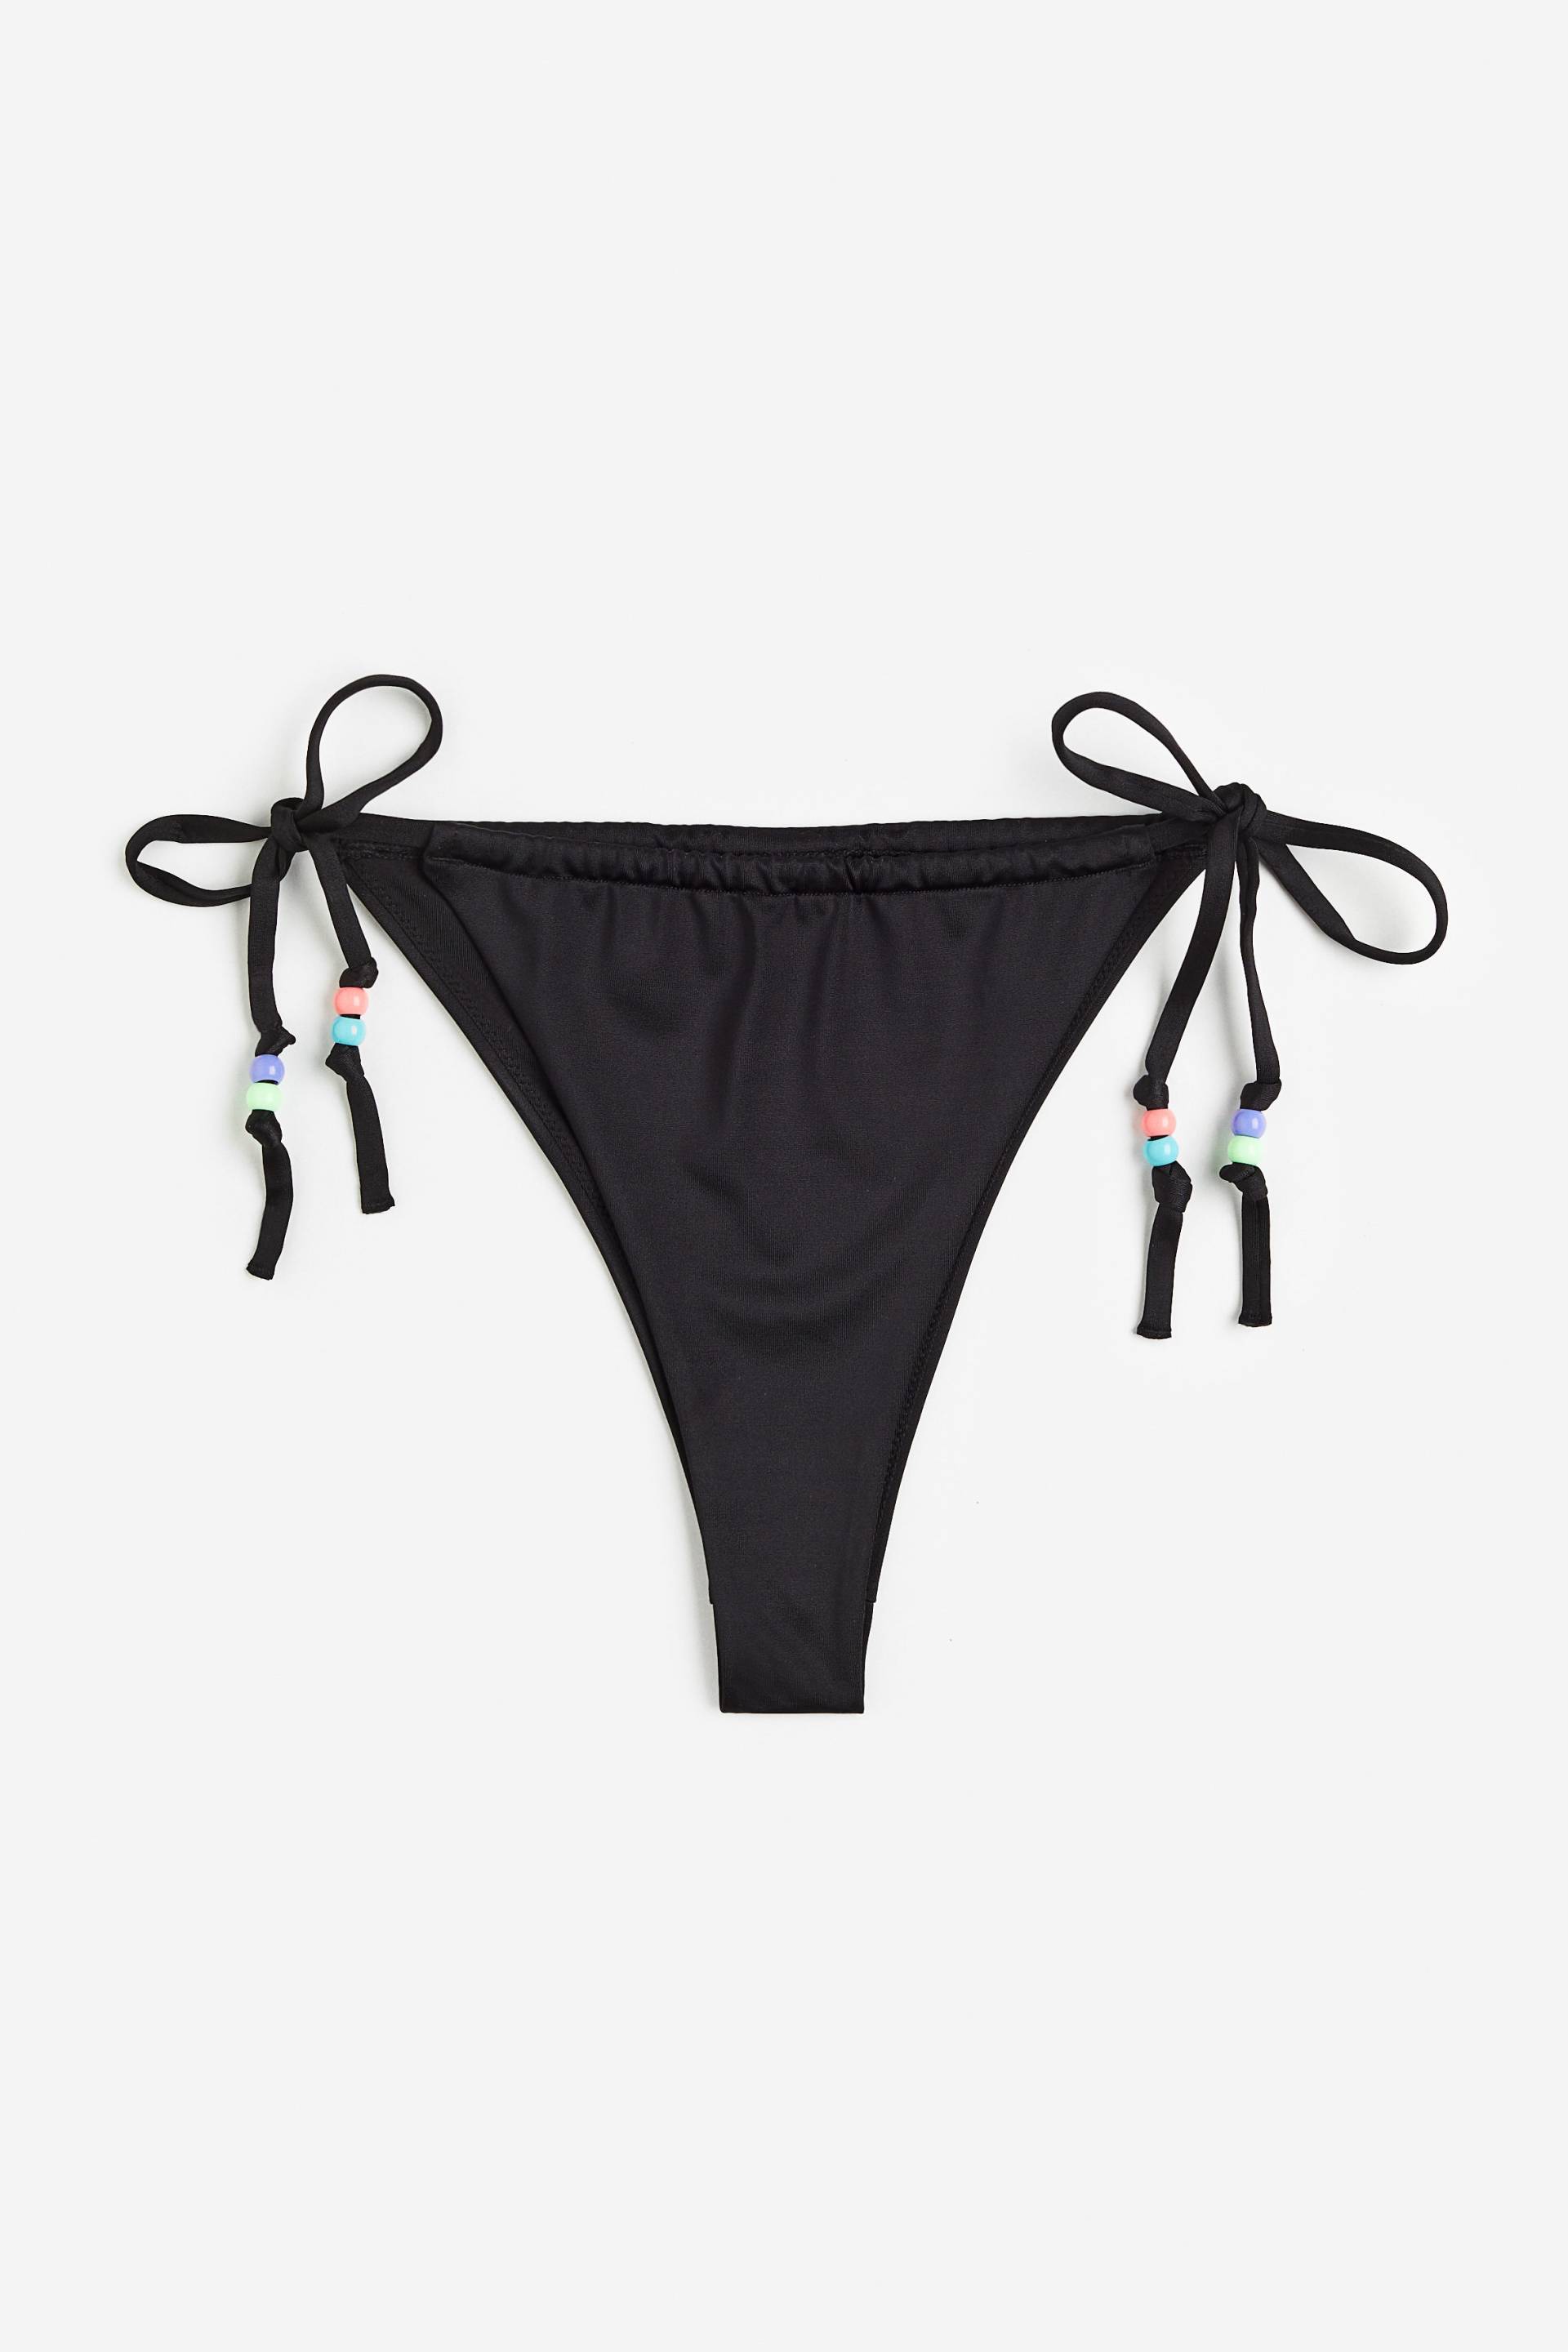 H&M Bikinihose Brazilian Schwarz, Bikini-Unterteil in Größe XL. Farbe: Black 012 von H&M